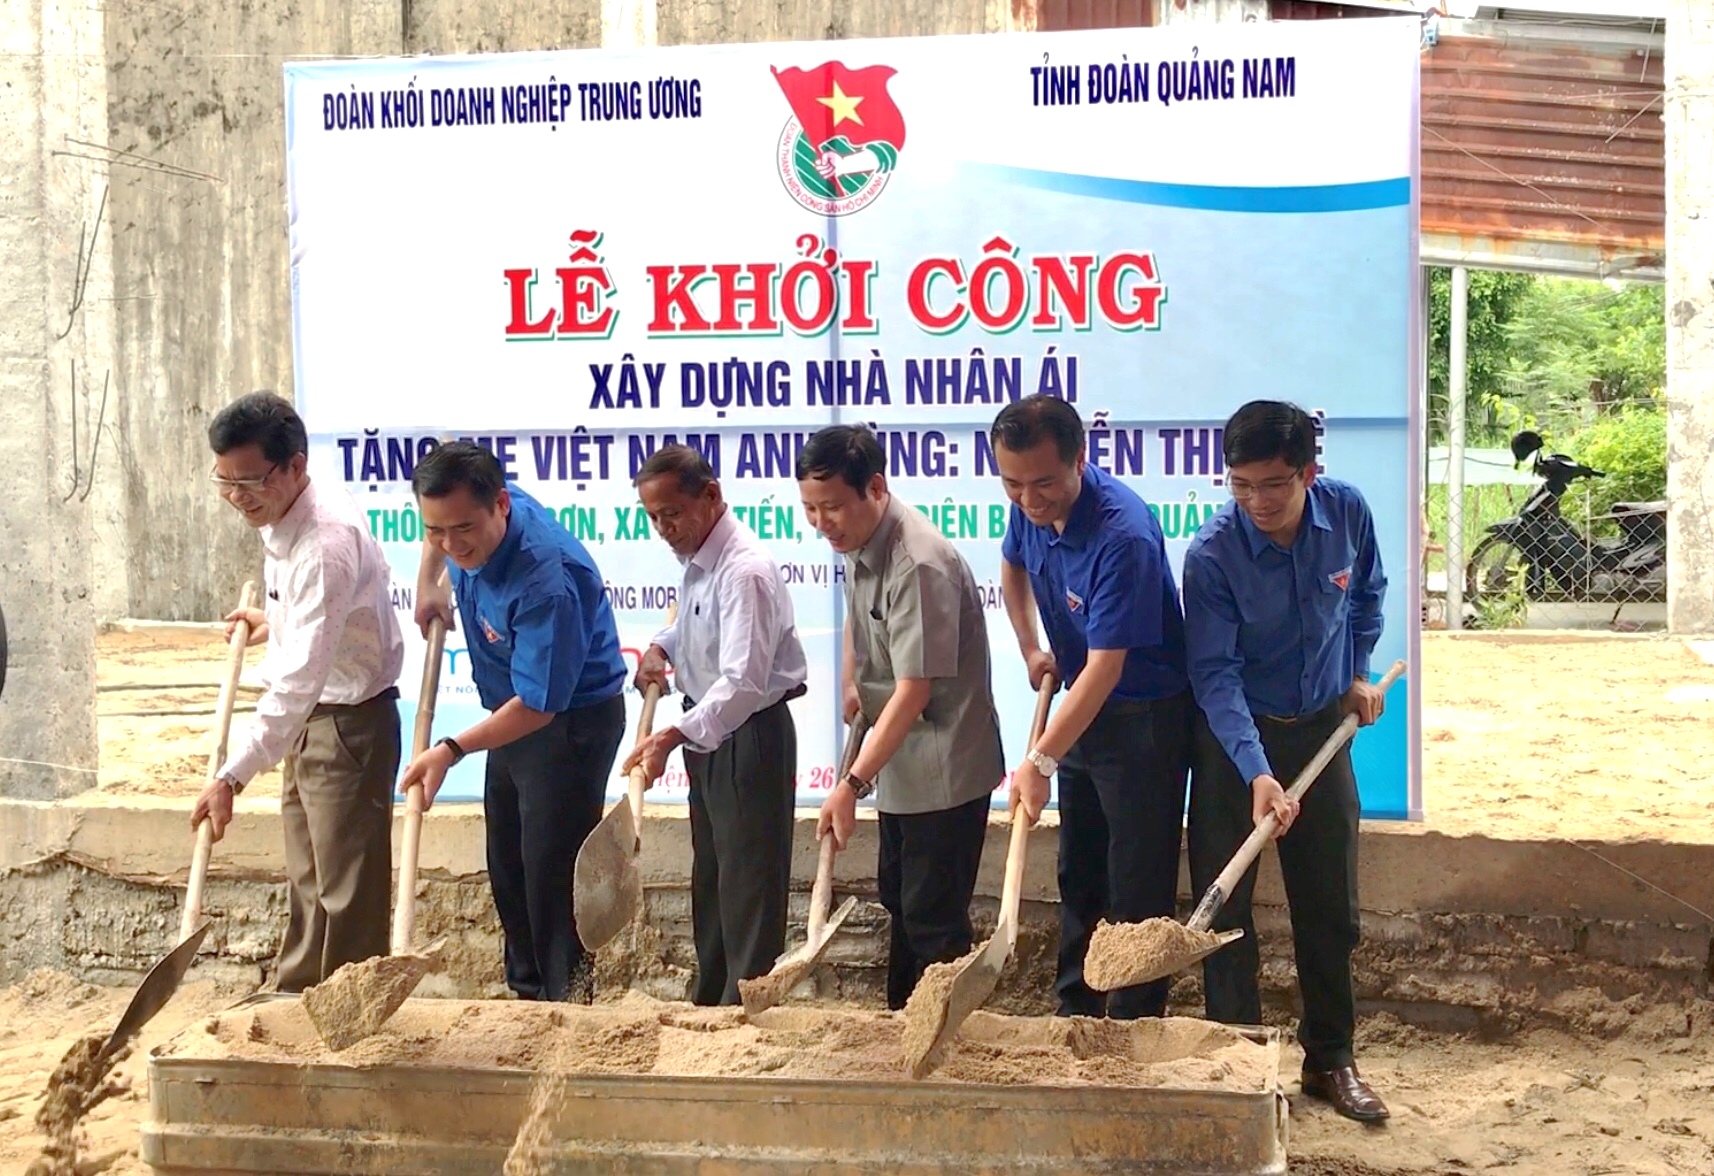 Lễ khởi công xây dựng nhà nhân ái tặng Mẹ VNAH Nguyễn Thị Huề tại thôn 1 Thái Sơn, xã Điện Tiến, huyện Điện Bàn, tỉnh Quảng Nam.